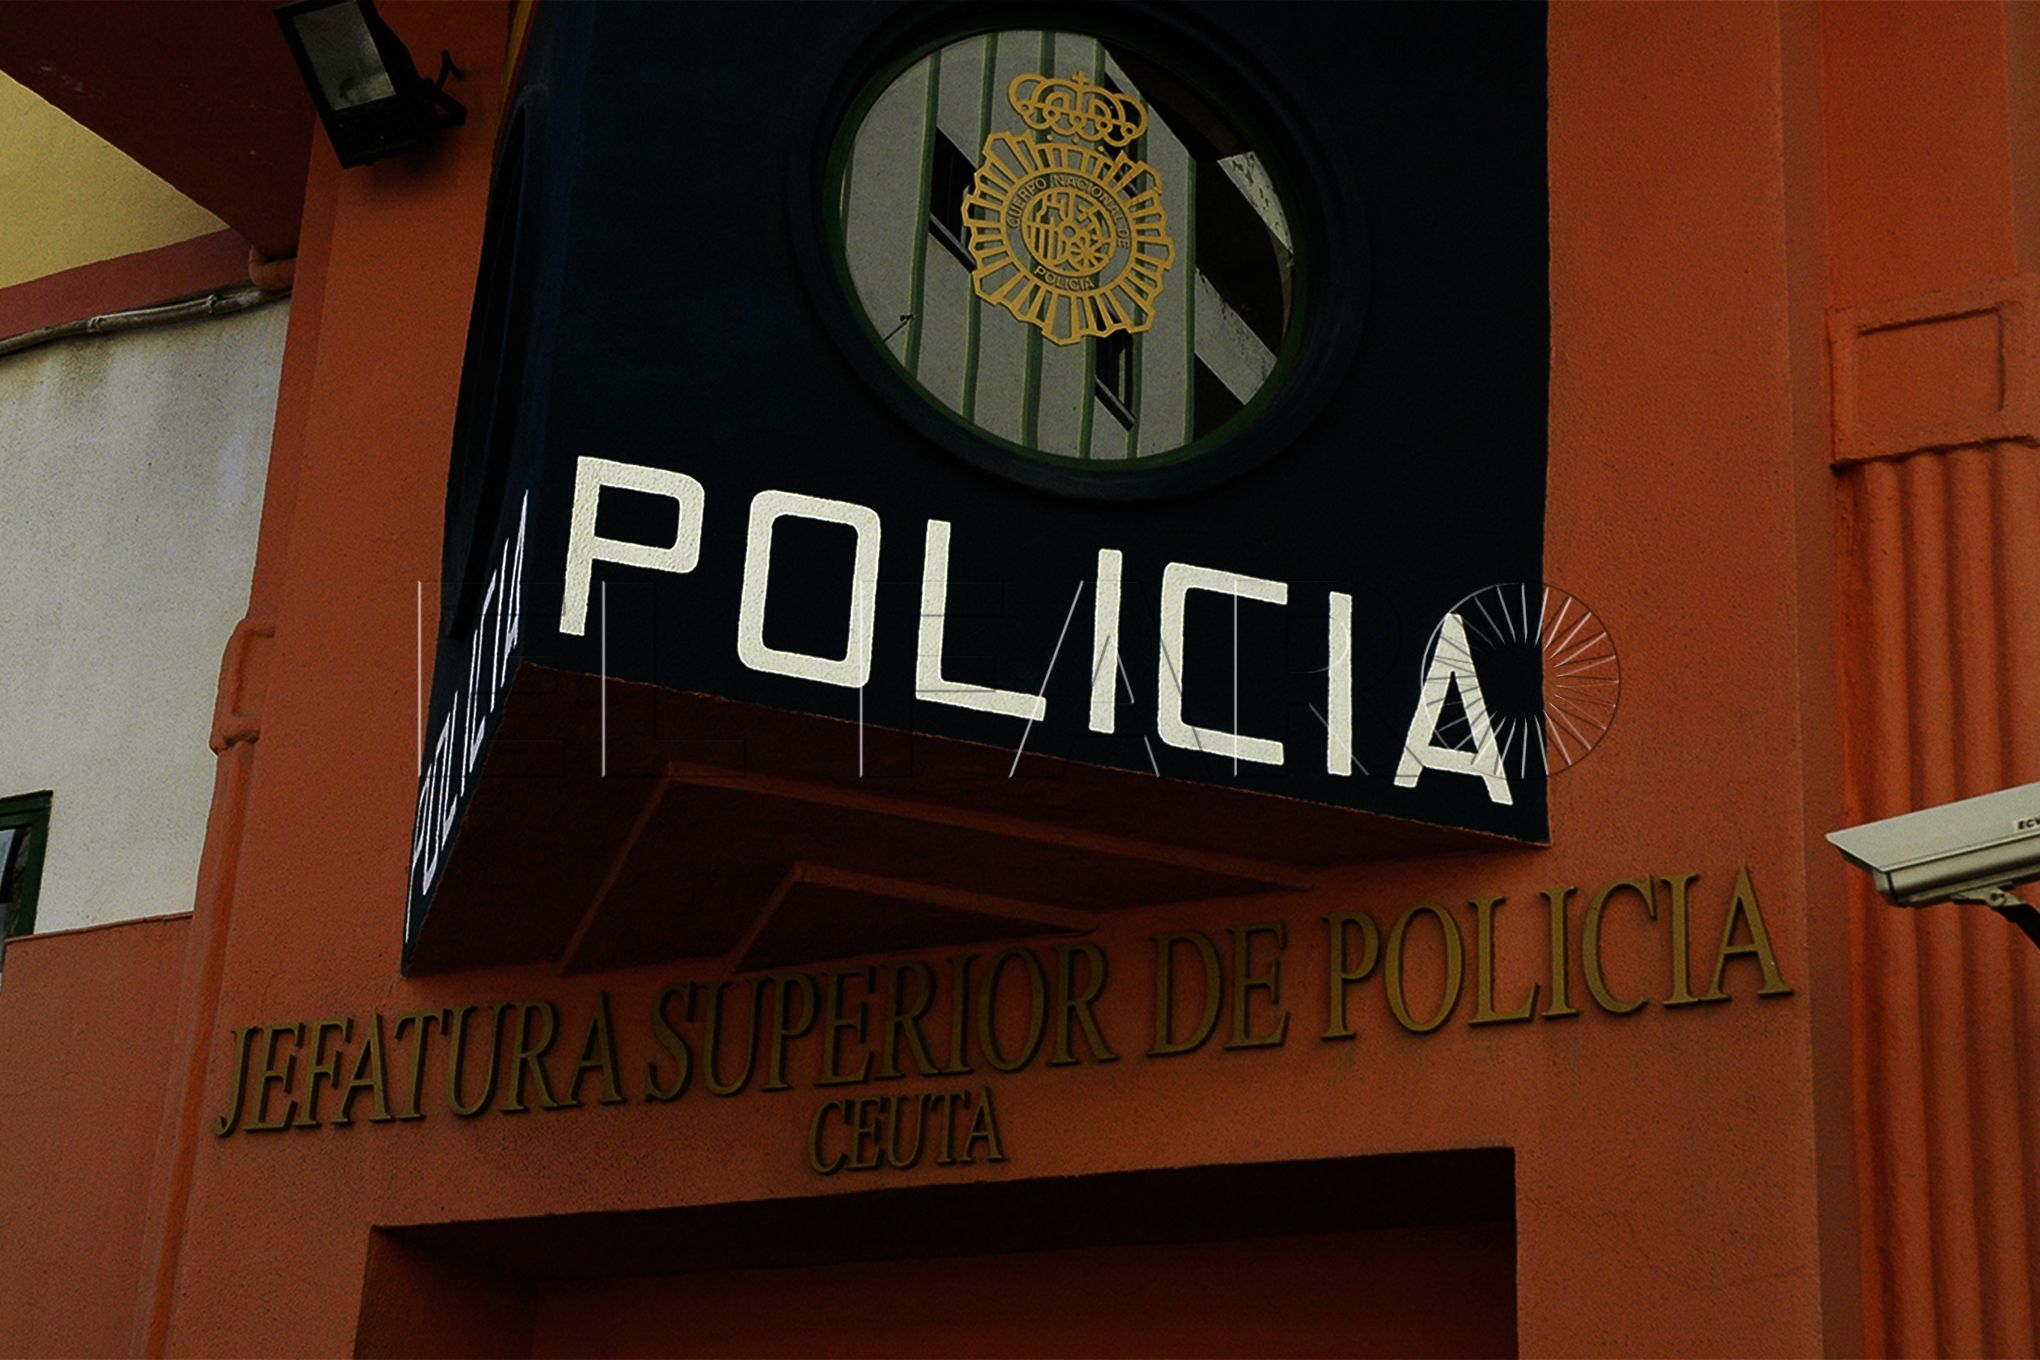 jefatura-superior-logo-policia-nacional